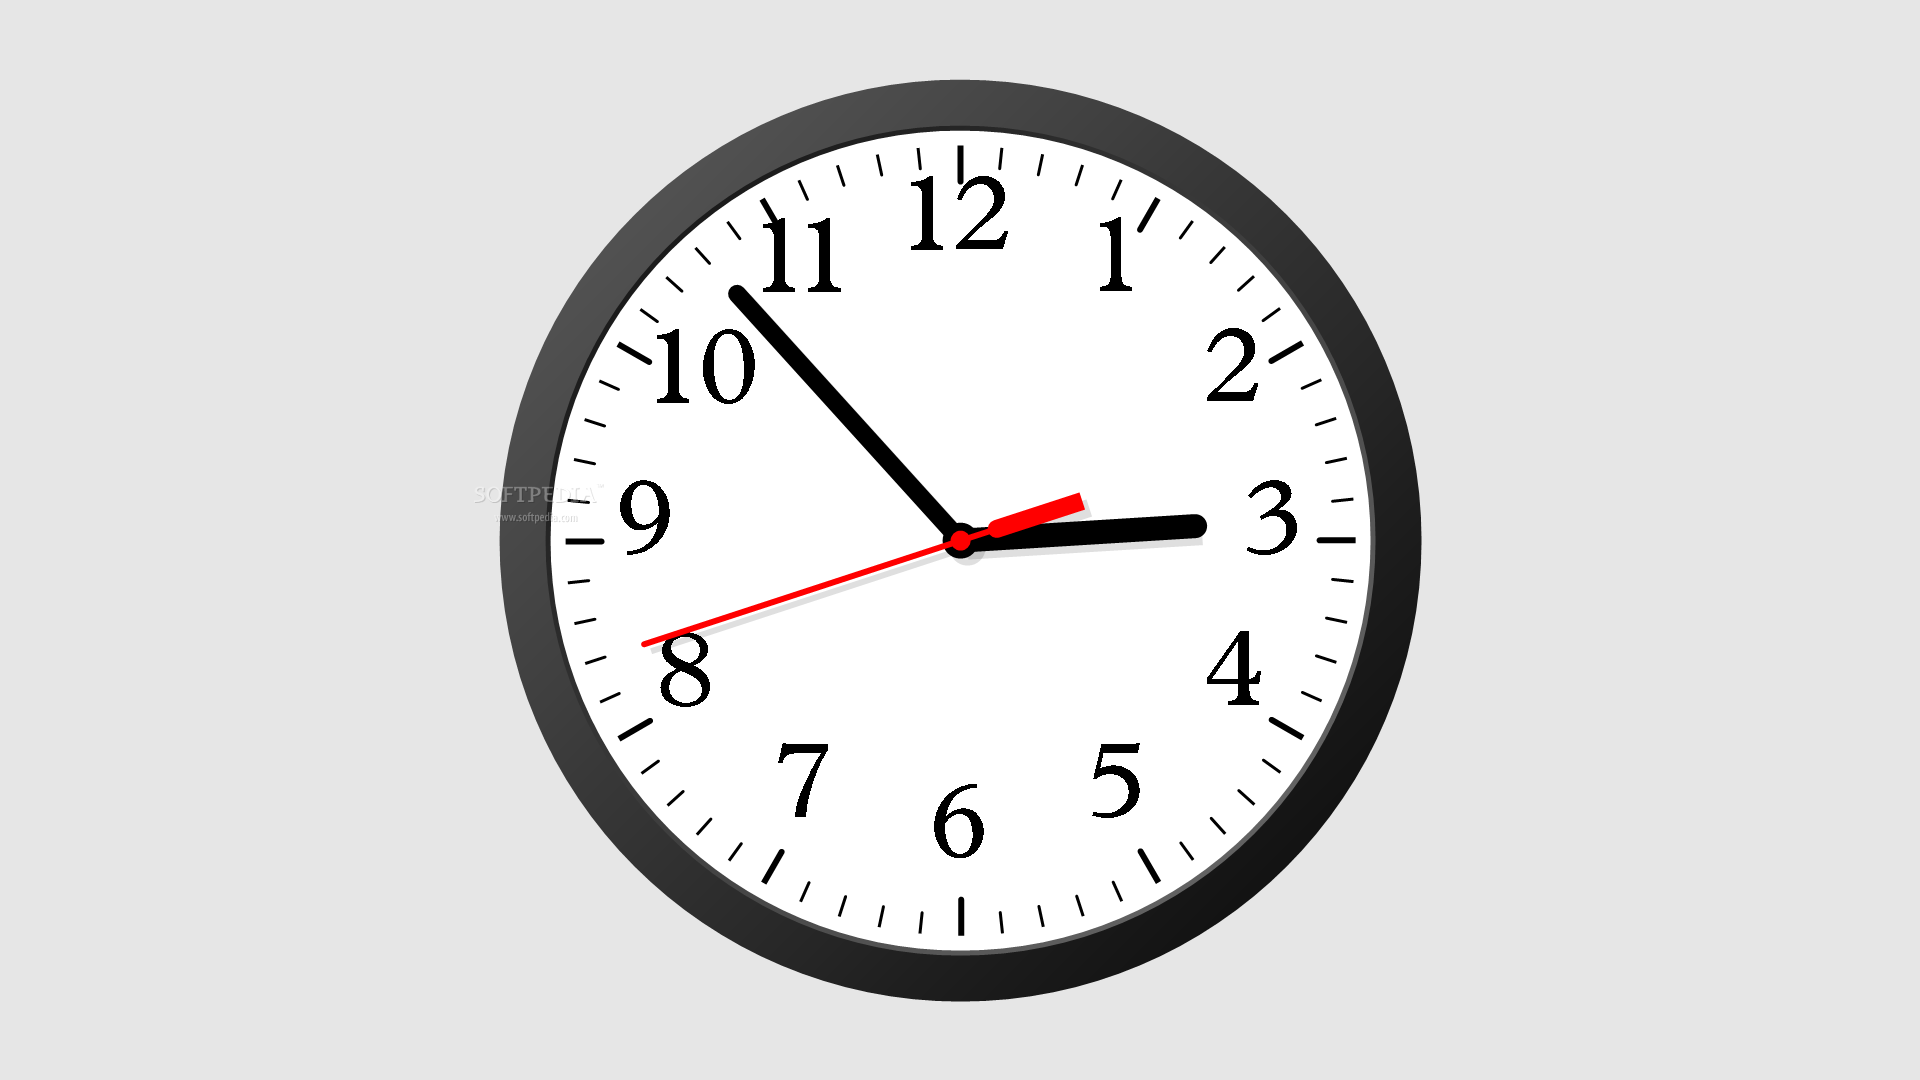 Как установить дату, часы, калькулятор и погоду на рабочий стол в Windows 7, 8, 10 Плюсы и минусы гаджетов и стандартных приложений